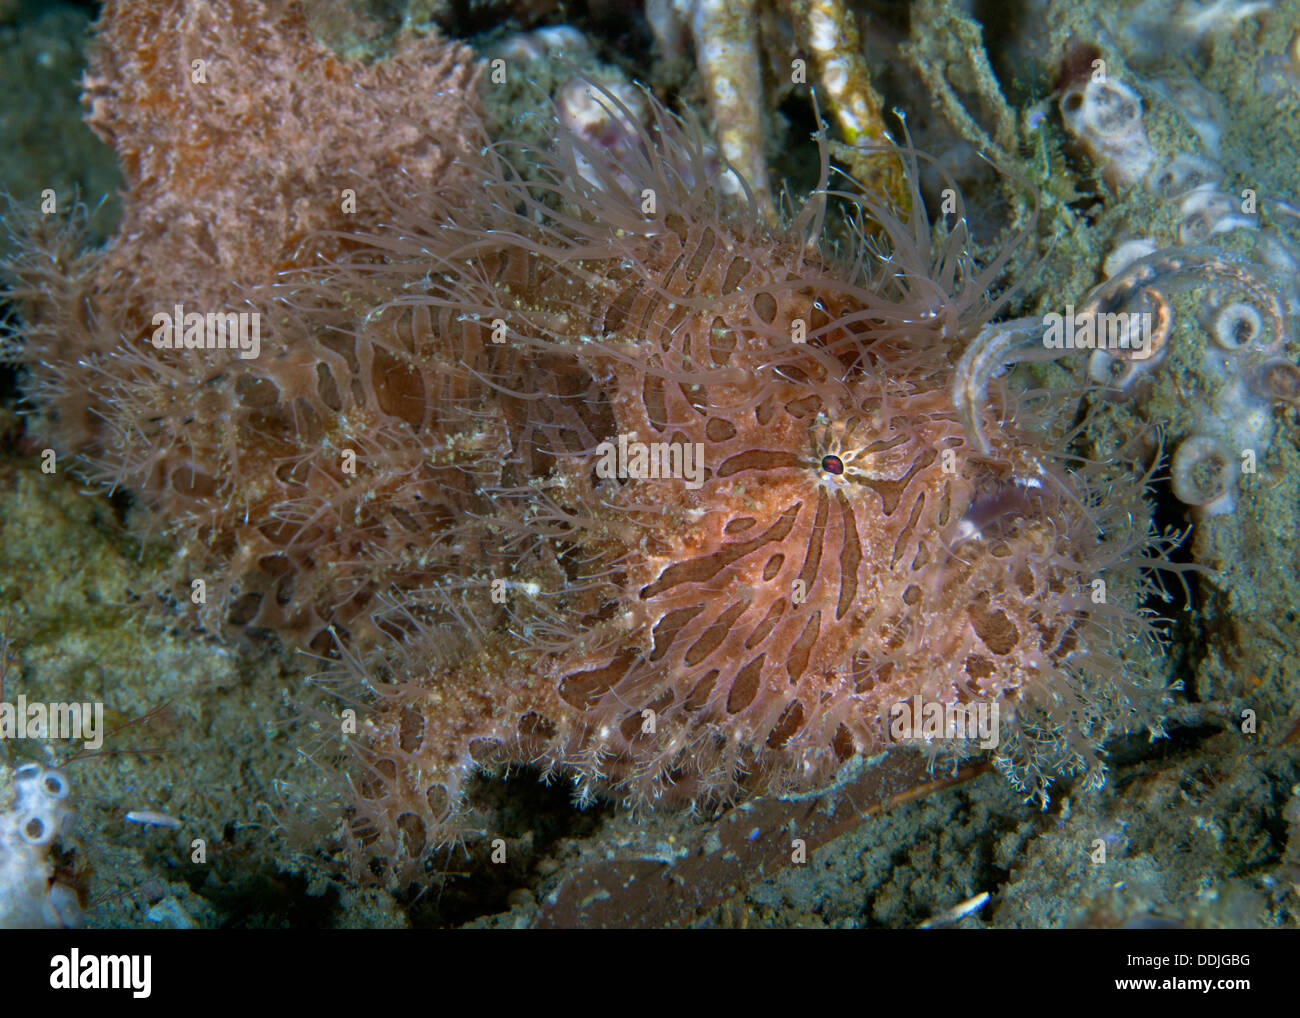 Close up image de poisson grenouille poilue casting son attrait. Puerto Galera, Philippines Banque D'Images